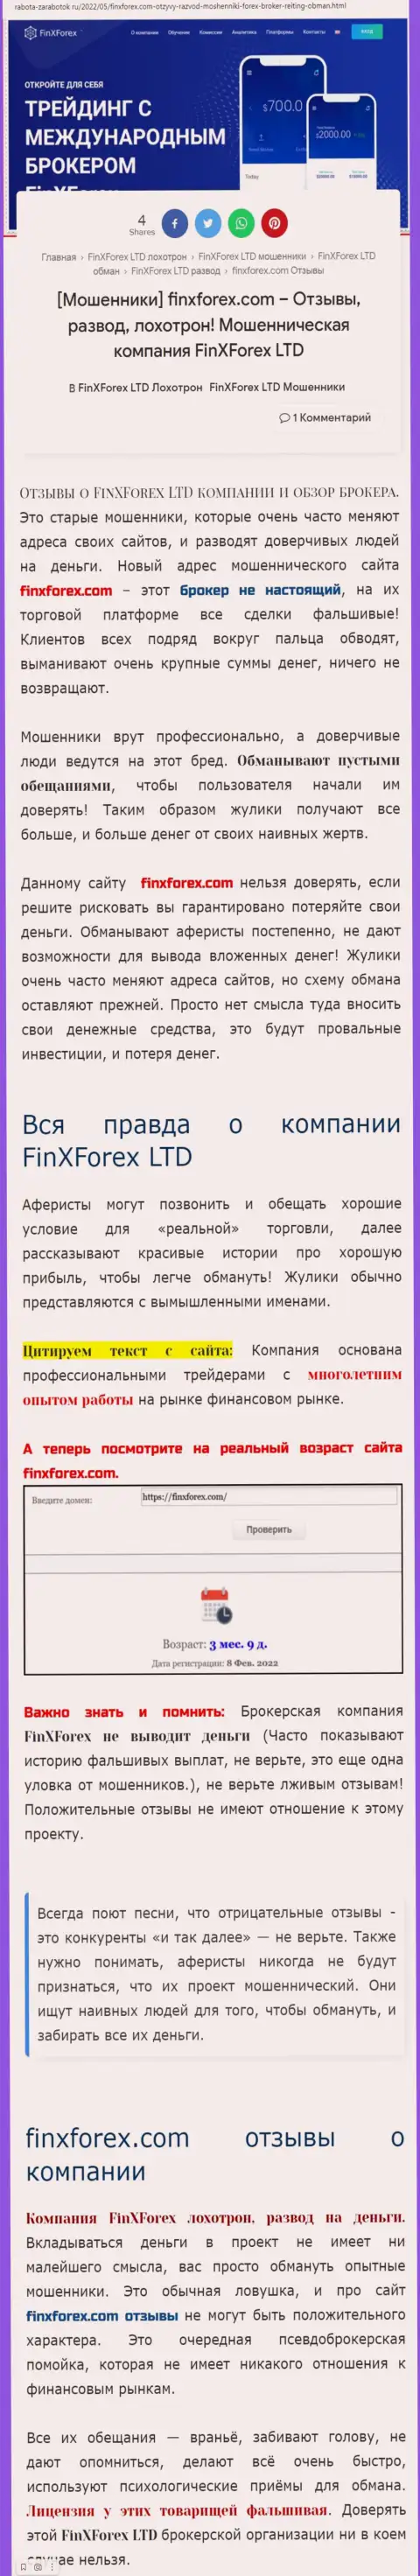 Автор обзорной статьи об ФинХФорекс Ком предупреждает, что в конторе ФинХФорекс Ком обманывают